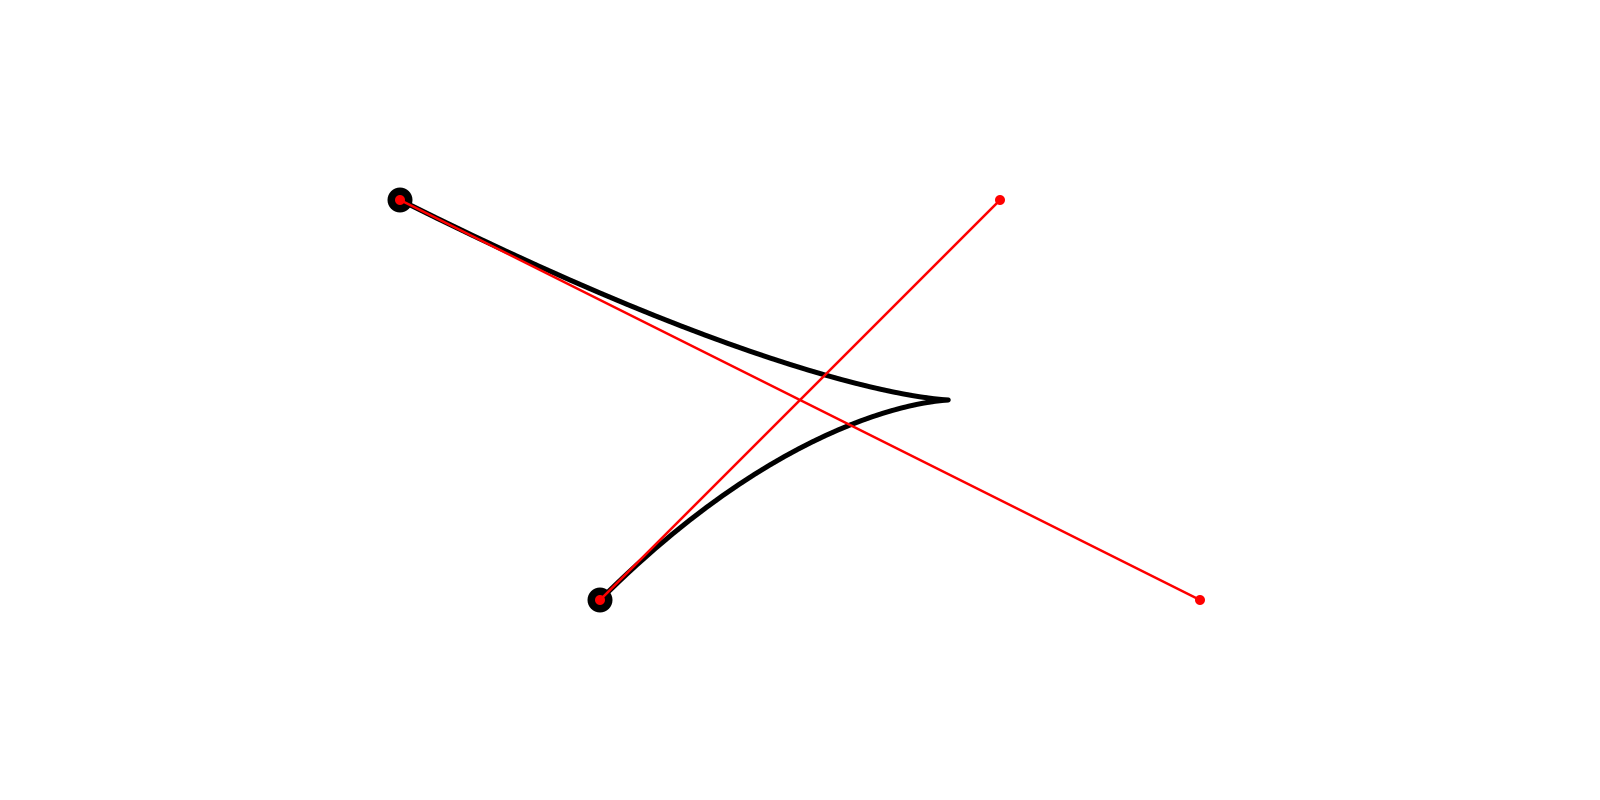 Адаптивное разбиение кривых Безье 2-го и 3-го порядка - 3